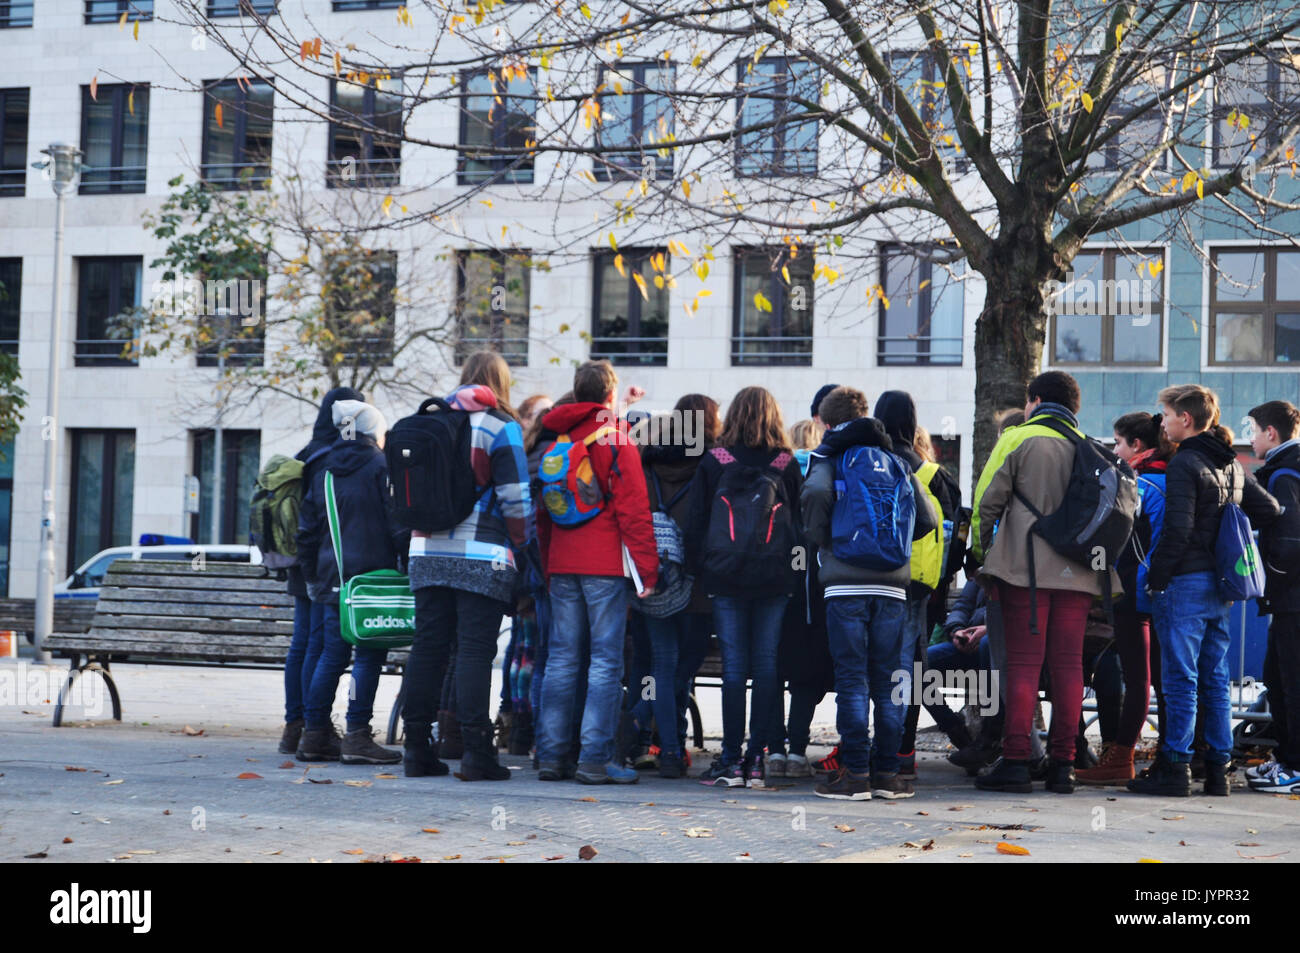 Deutsche Volk und fremde Reisende Masse um etwas im Garten, neben der Straße von Berlin City am 9. November in Berlin 2016, Deutsch Stockfoto